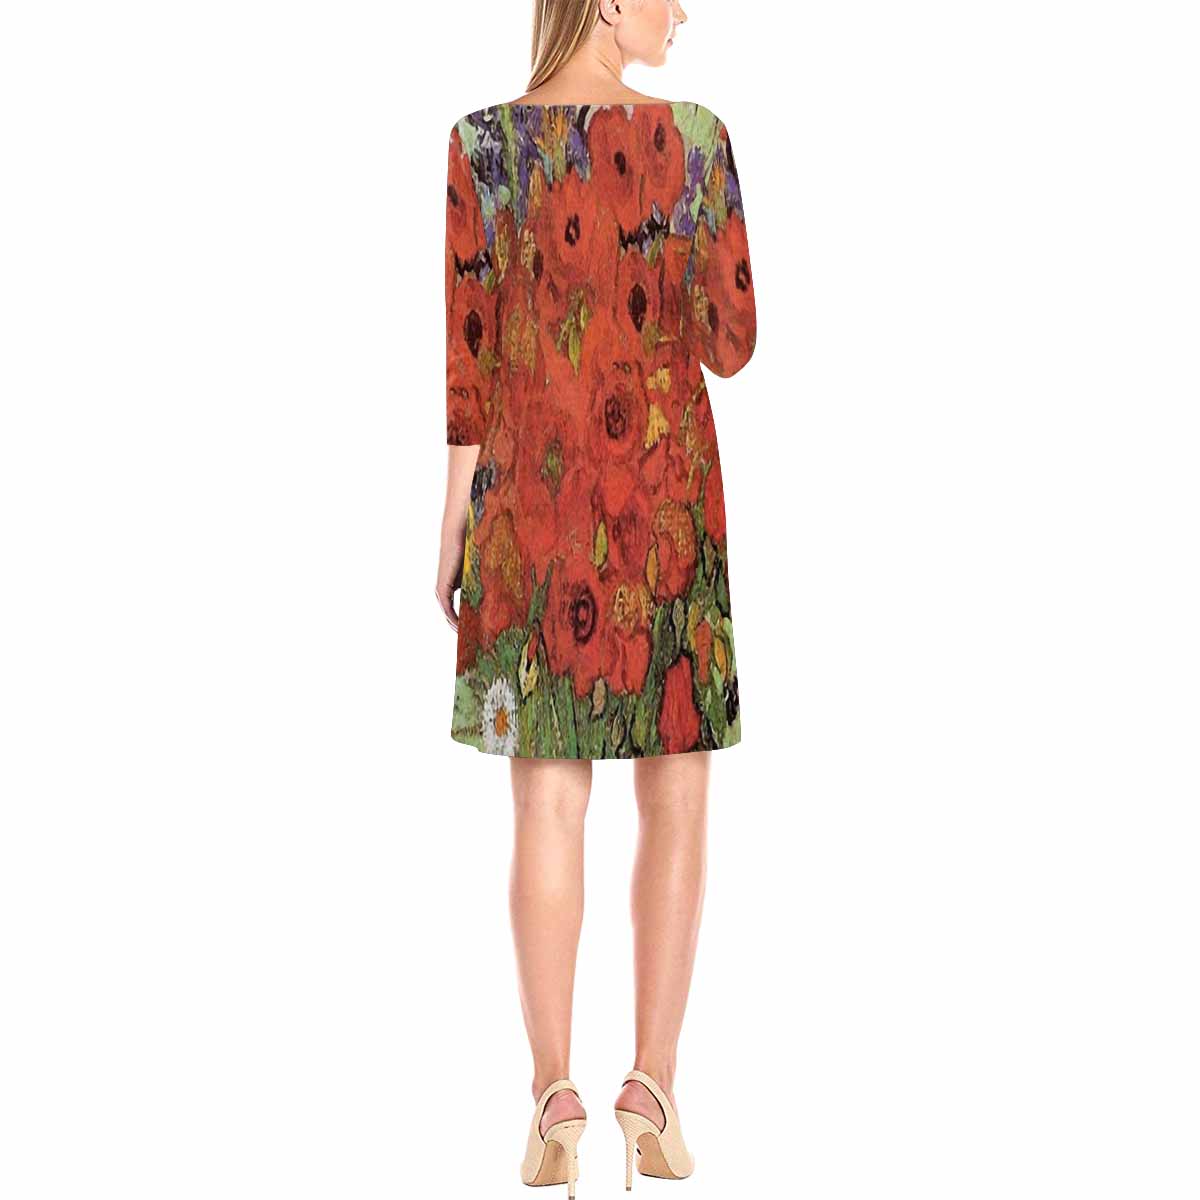 Vintage floral loose dress, model D29532 Design 47